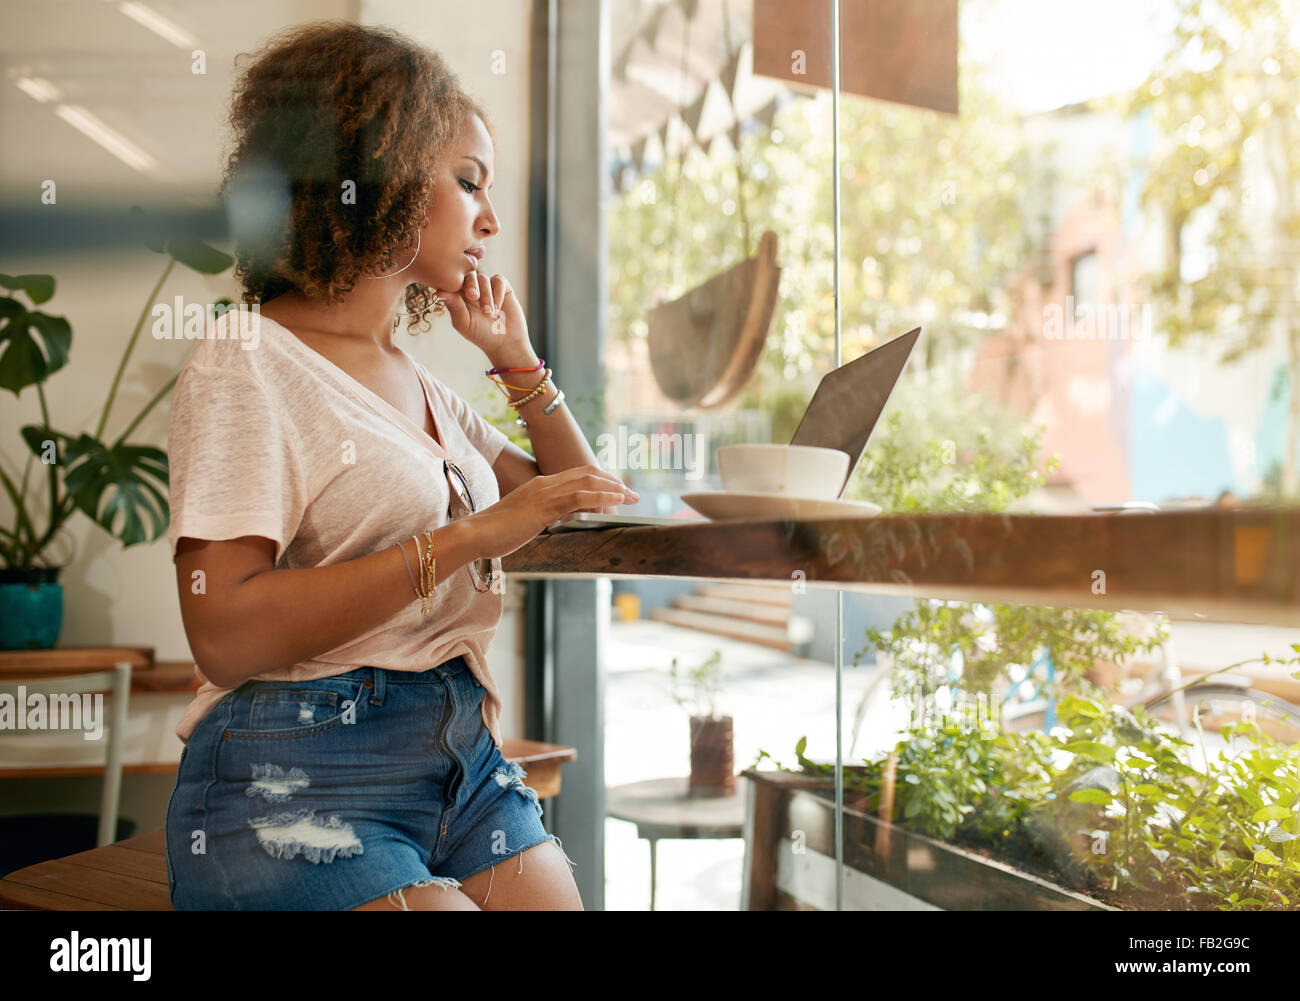 Aufnahme einer jungen Frau, die mit ihrem Laptop in einem Café. Afrikanische Frauen sitzen im Café Internet auf ihrem Laptop surfen. Stockfoto